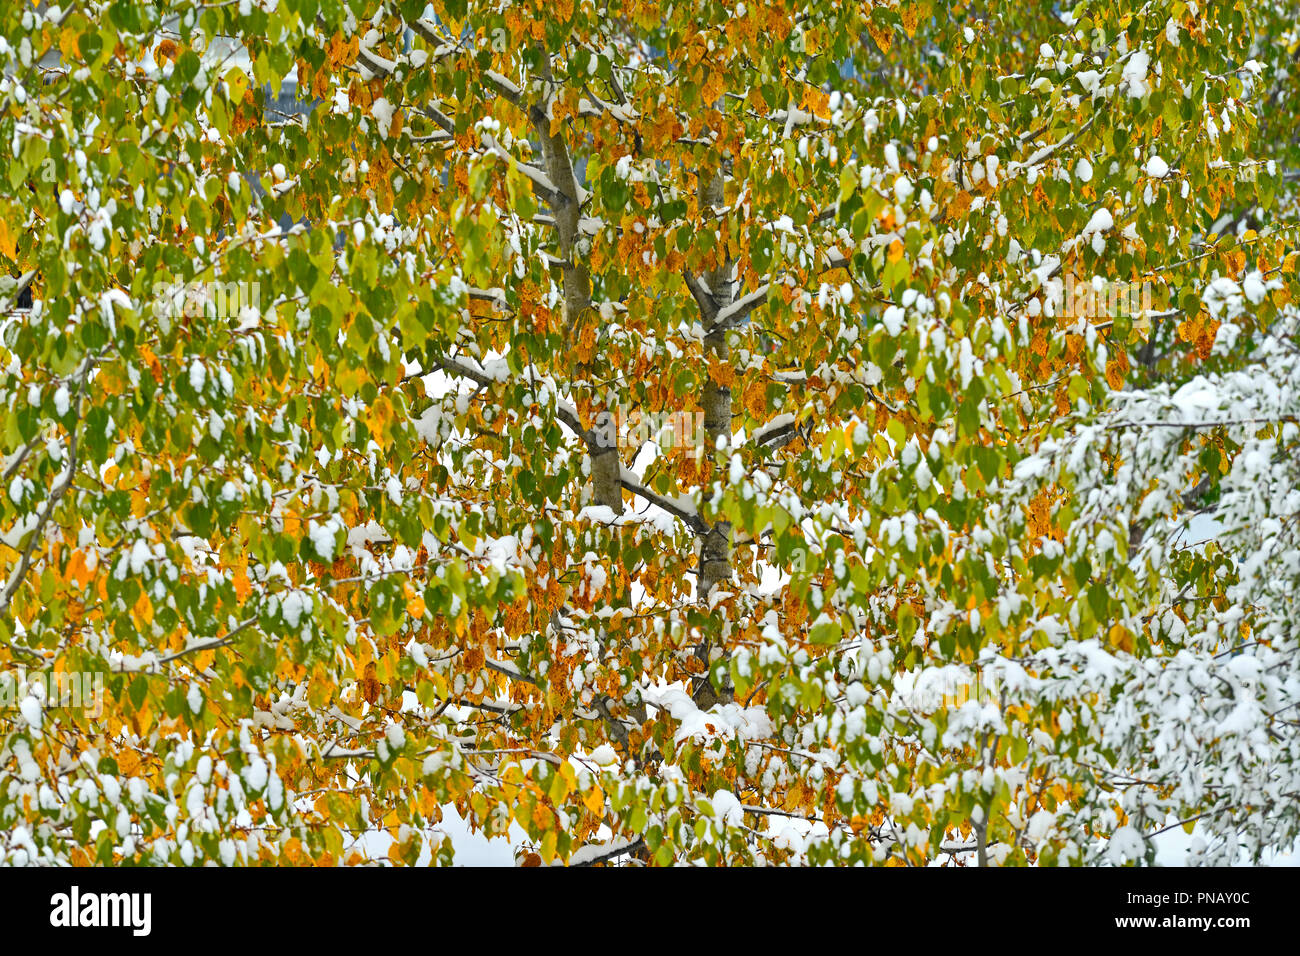 Ein horizontaler Natur Bild des ersten September Schnee auf bunte Blätter eines Laubbaums in ländlichen Alberta Kanada fallen. Stockfoto